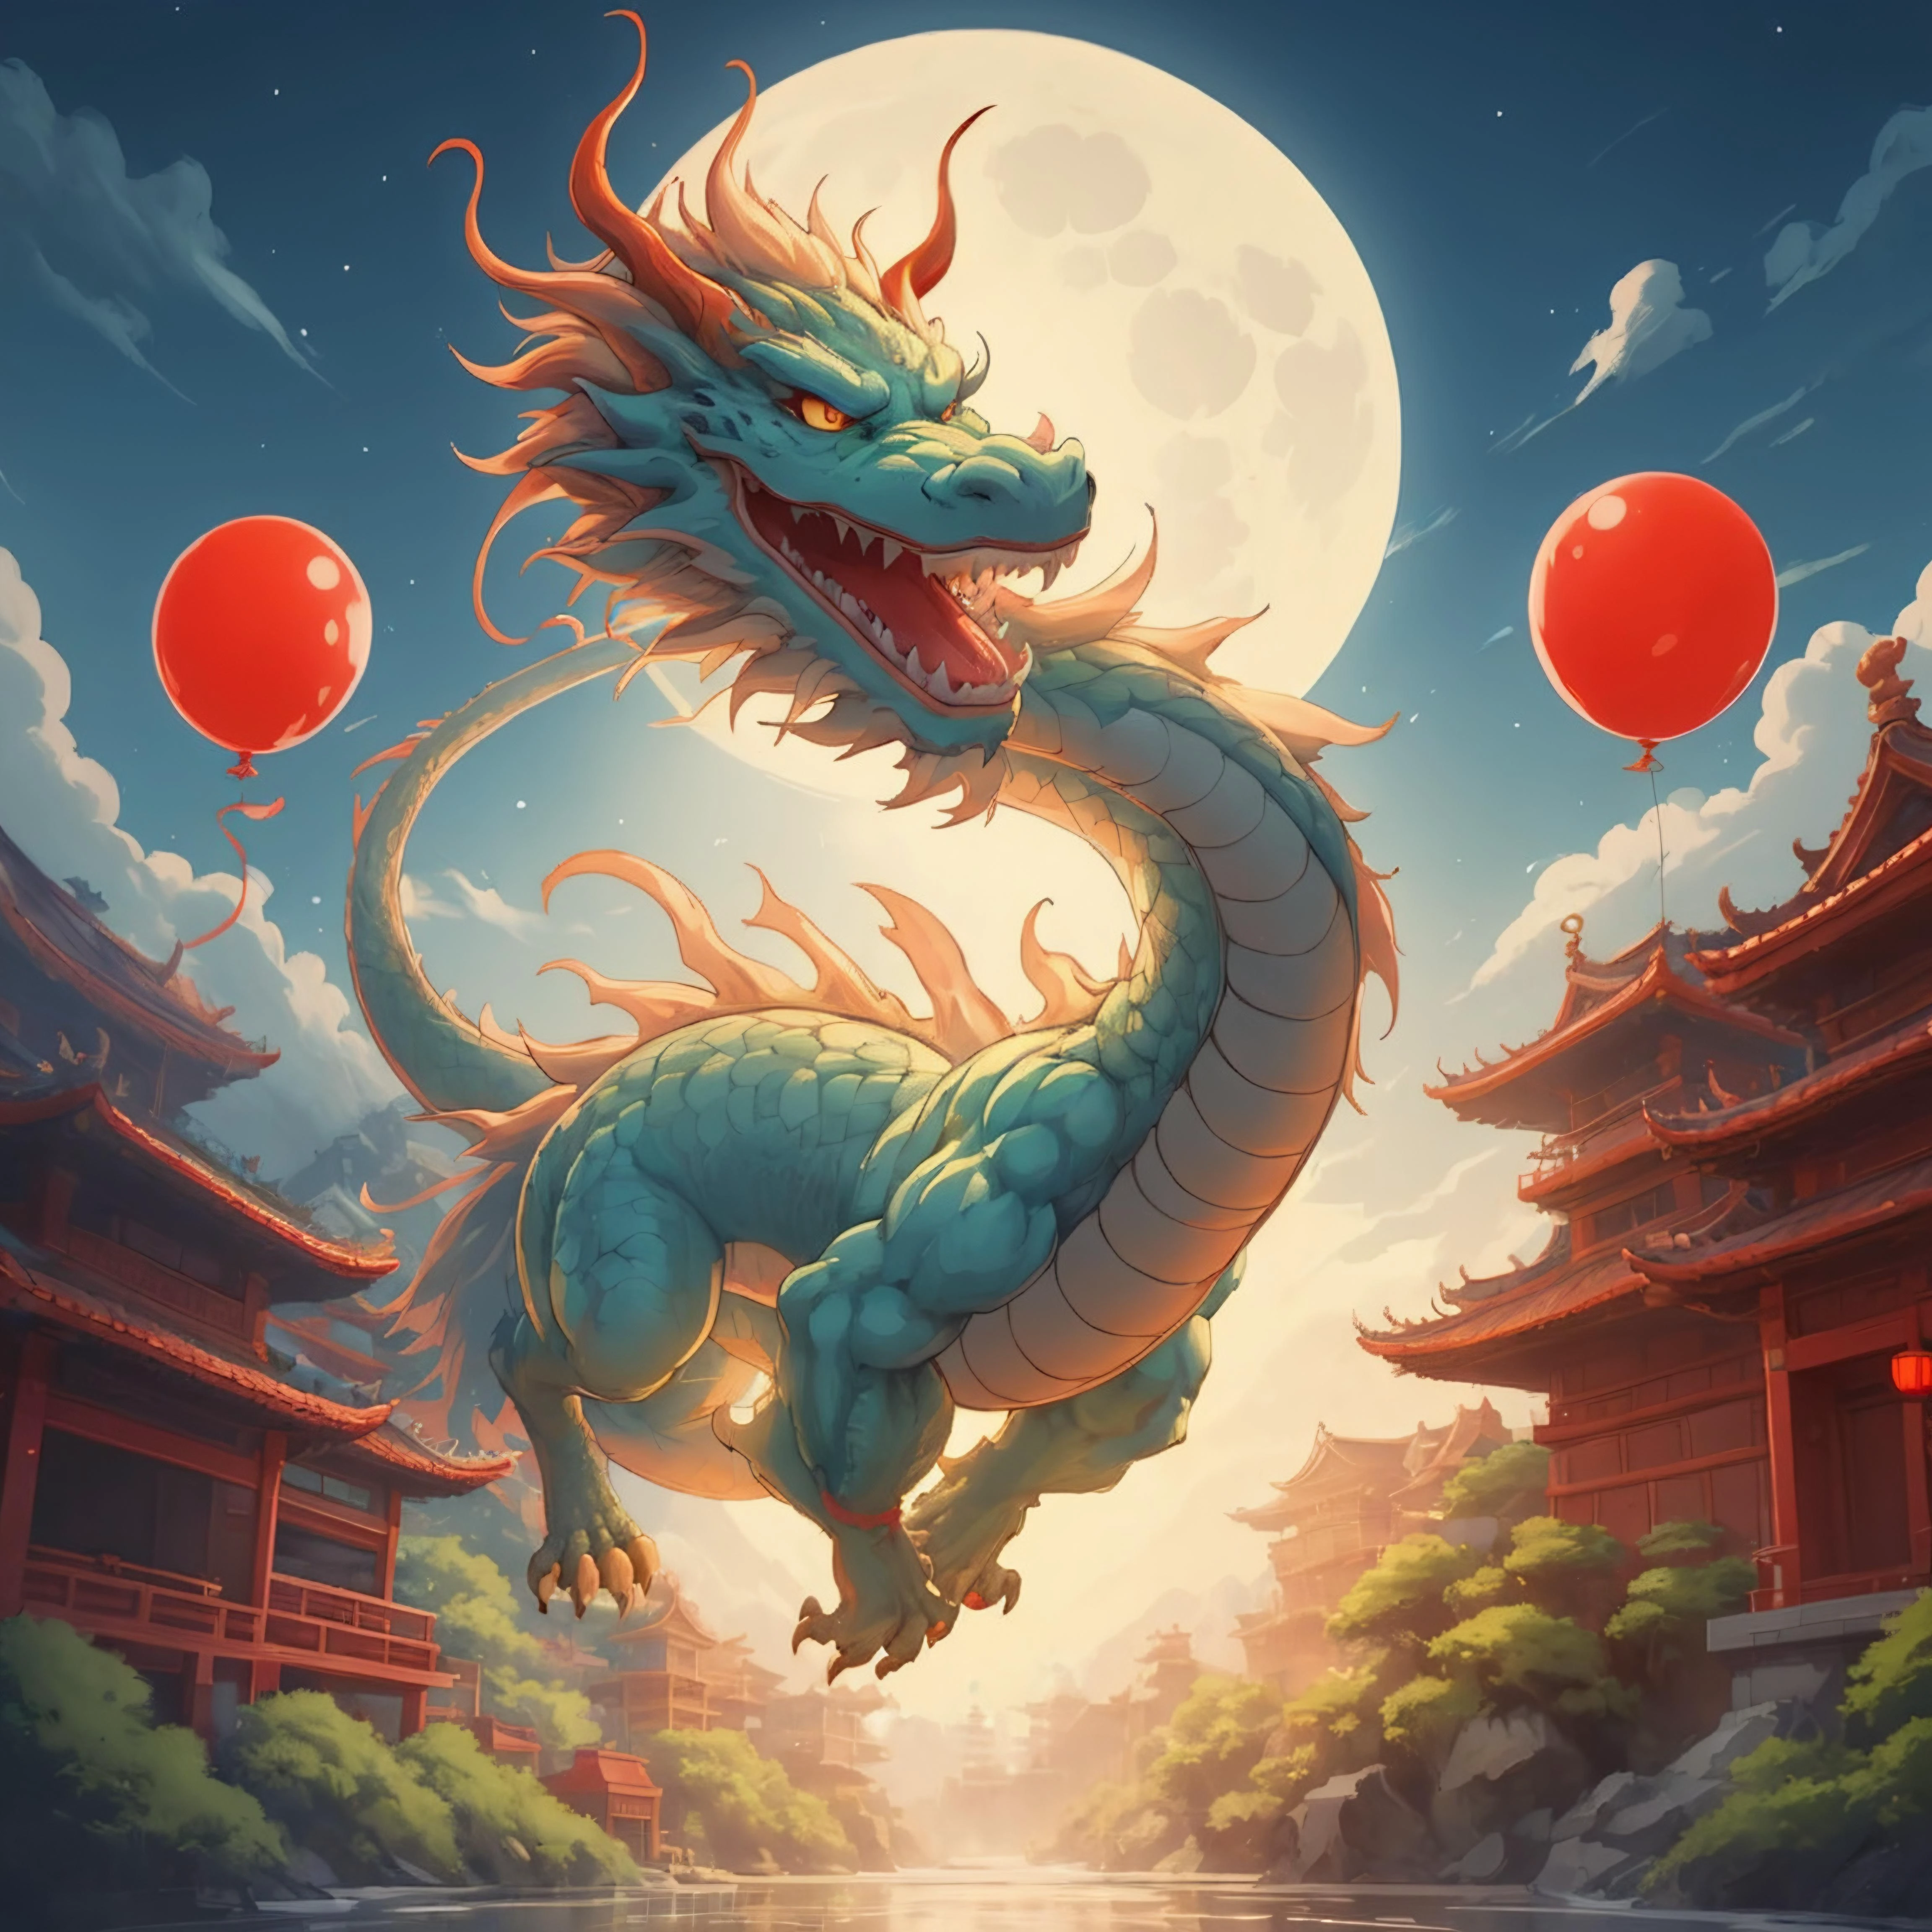 a dragon, Con patas, dragón cuerpo, (temple:1.1), Brillante,  cola, Festival de la Luna,  globos, noche, resplandor de la luna, animado, diseño, estudio ghibli